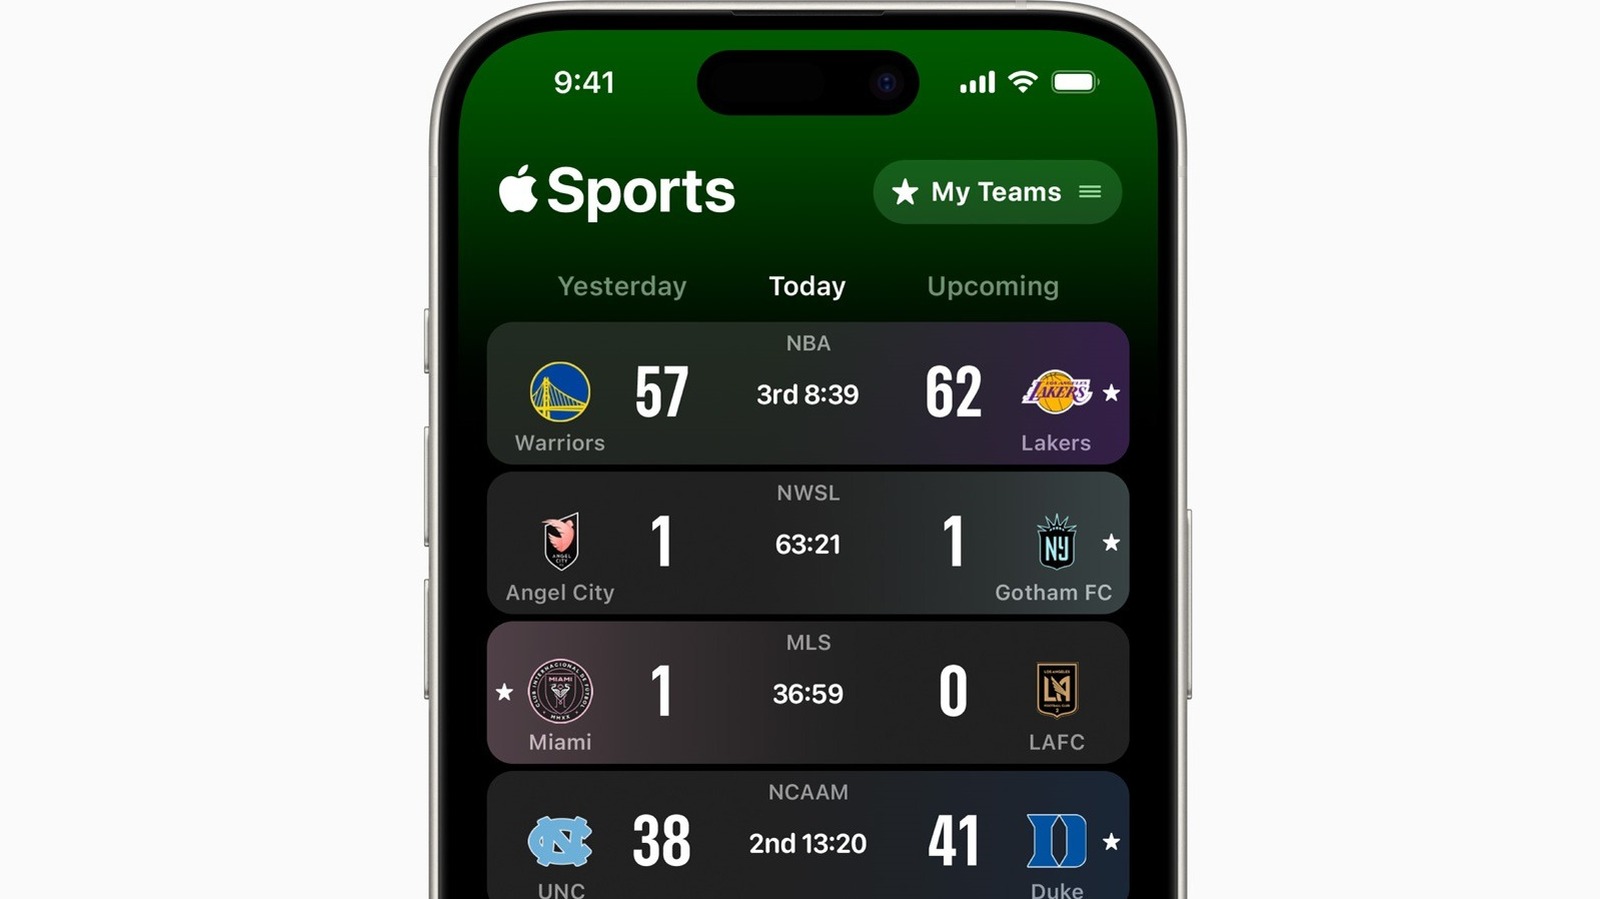 La nueva aplicación de deportes de Apple para iPhone es imprescindible, incluso fuera de temporada